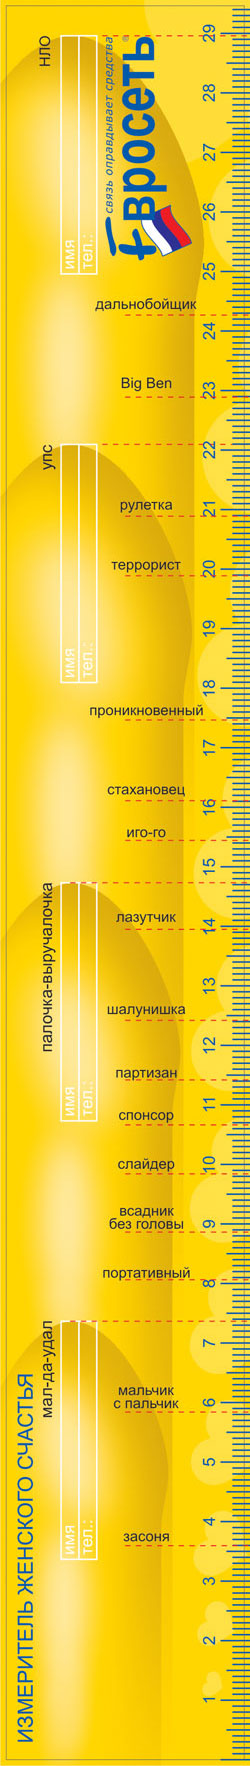 http://de.fishki.net/picsw/032007/07/ruler/ruler.jpg